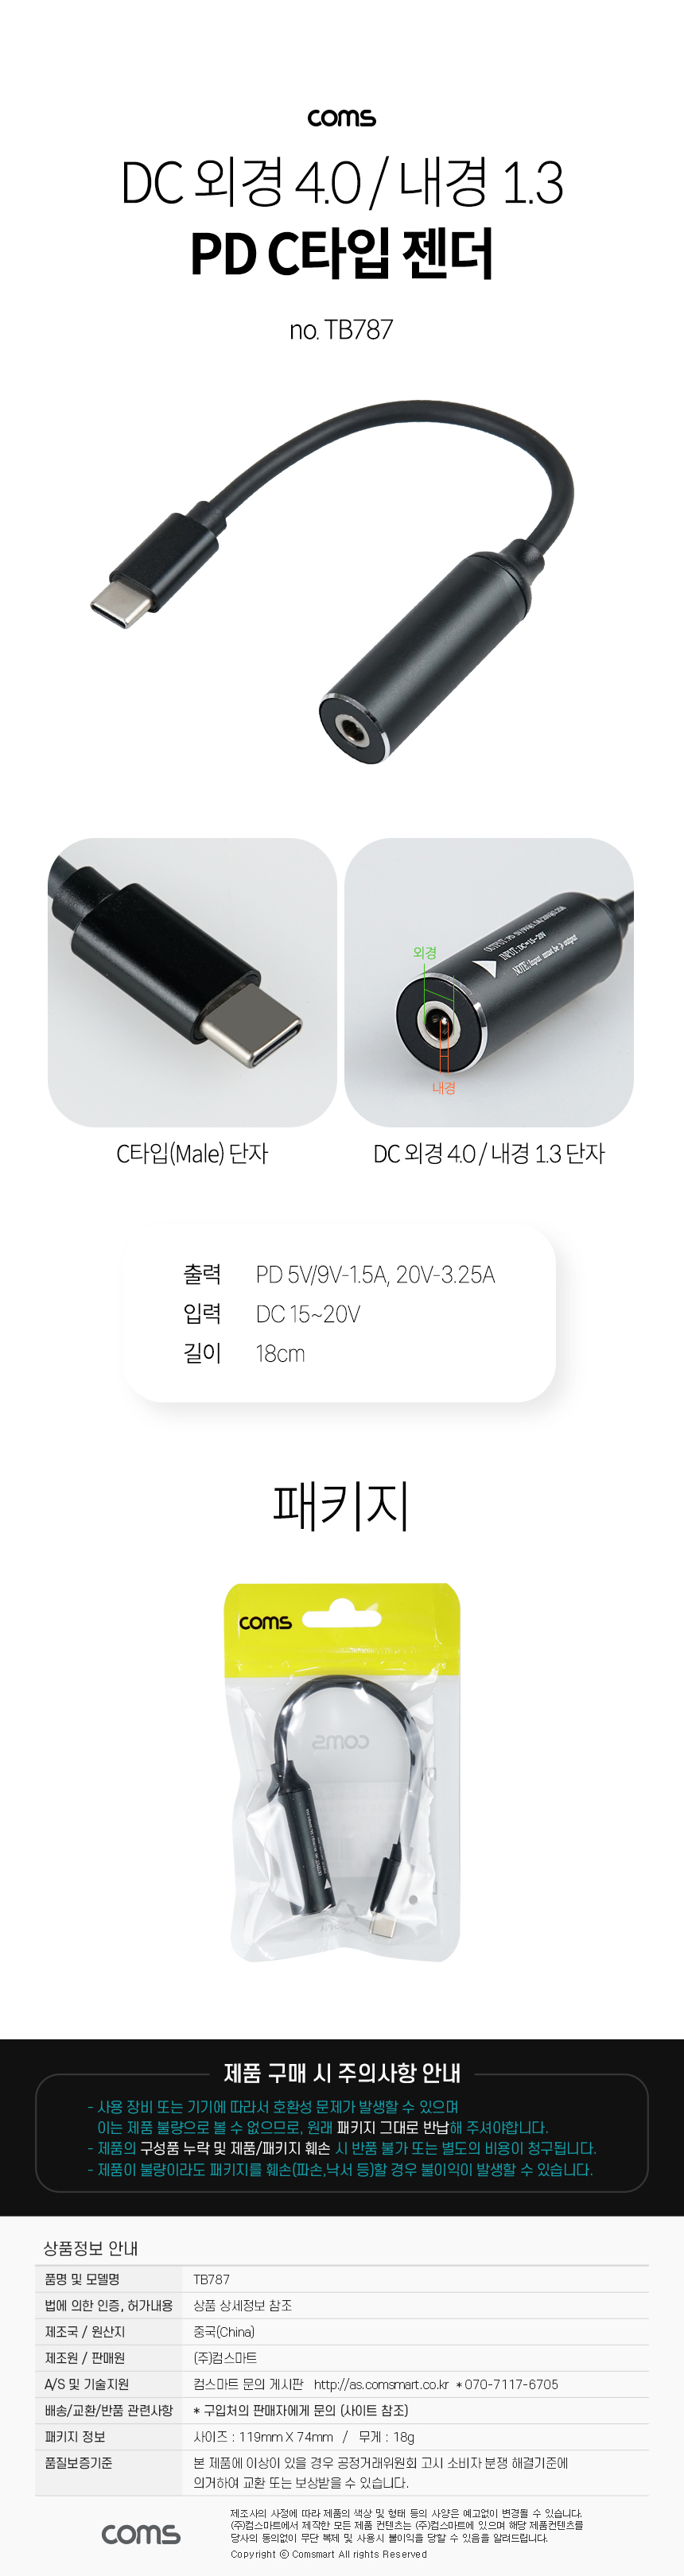 USB Type C PD 노트북 전원 변환 충전 케이블 DC 외경 4.0 내경 1.3 C타입 18cm